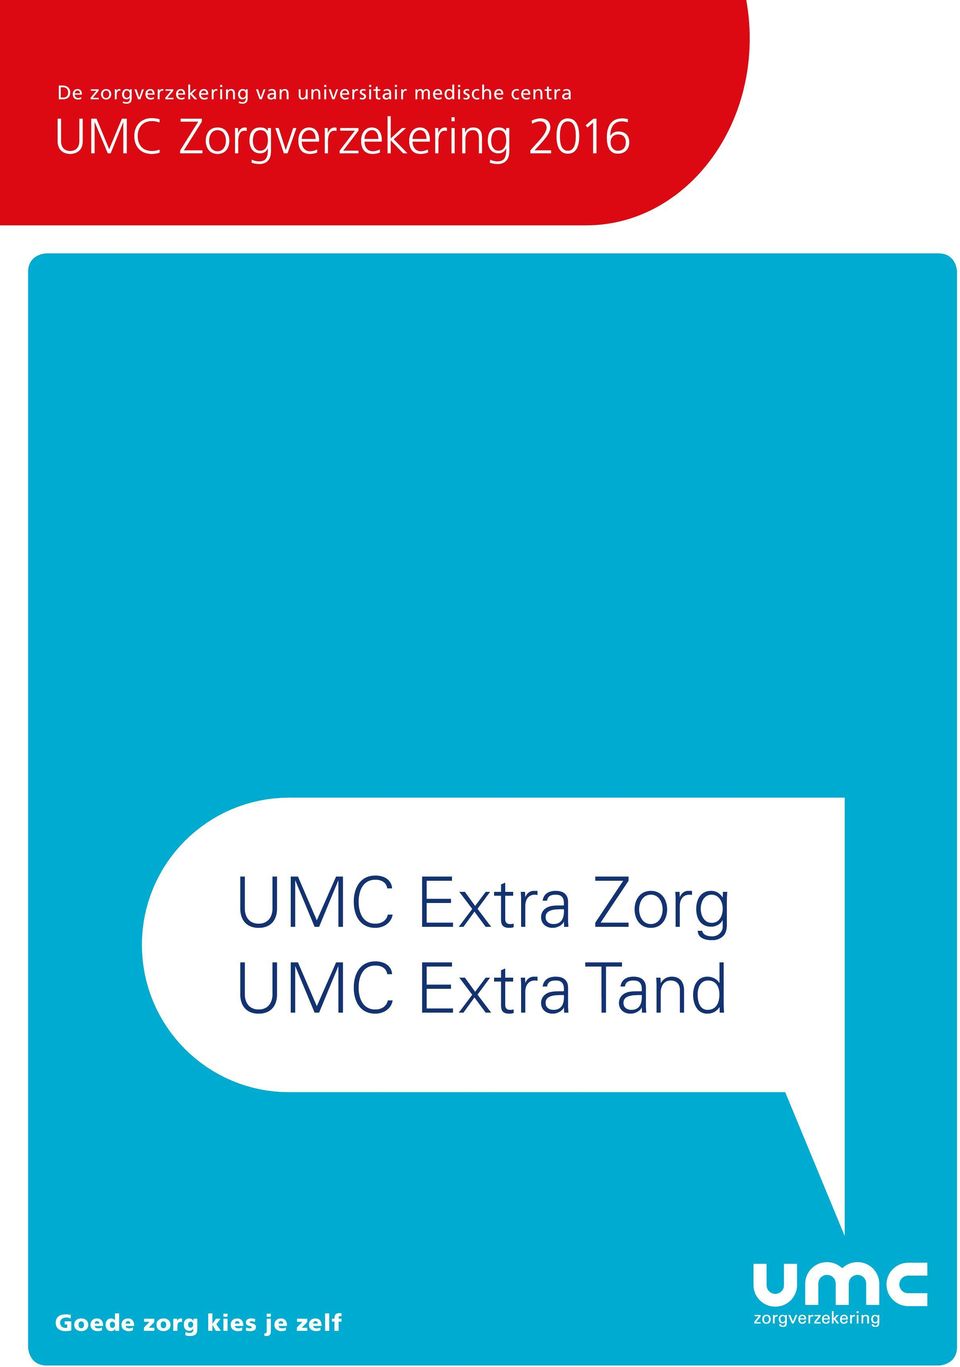 2016 UMC Extra Zorg UMC Extra Tand